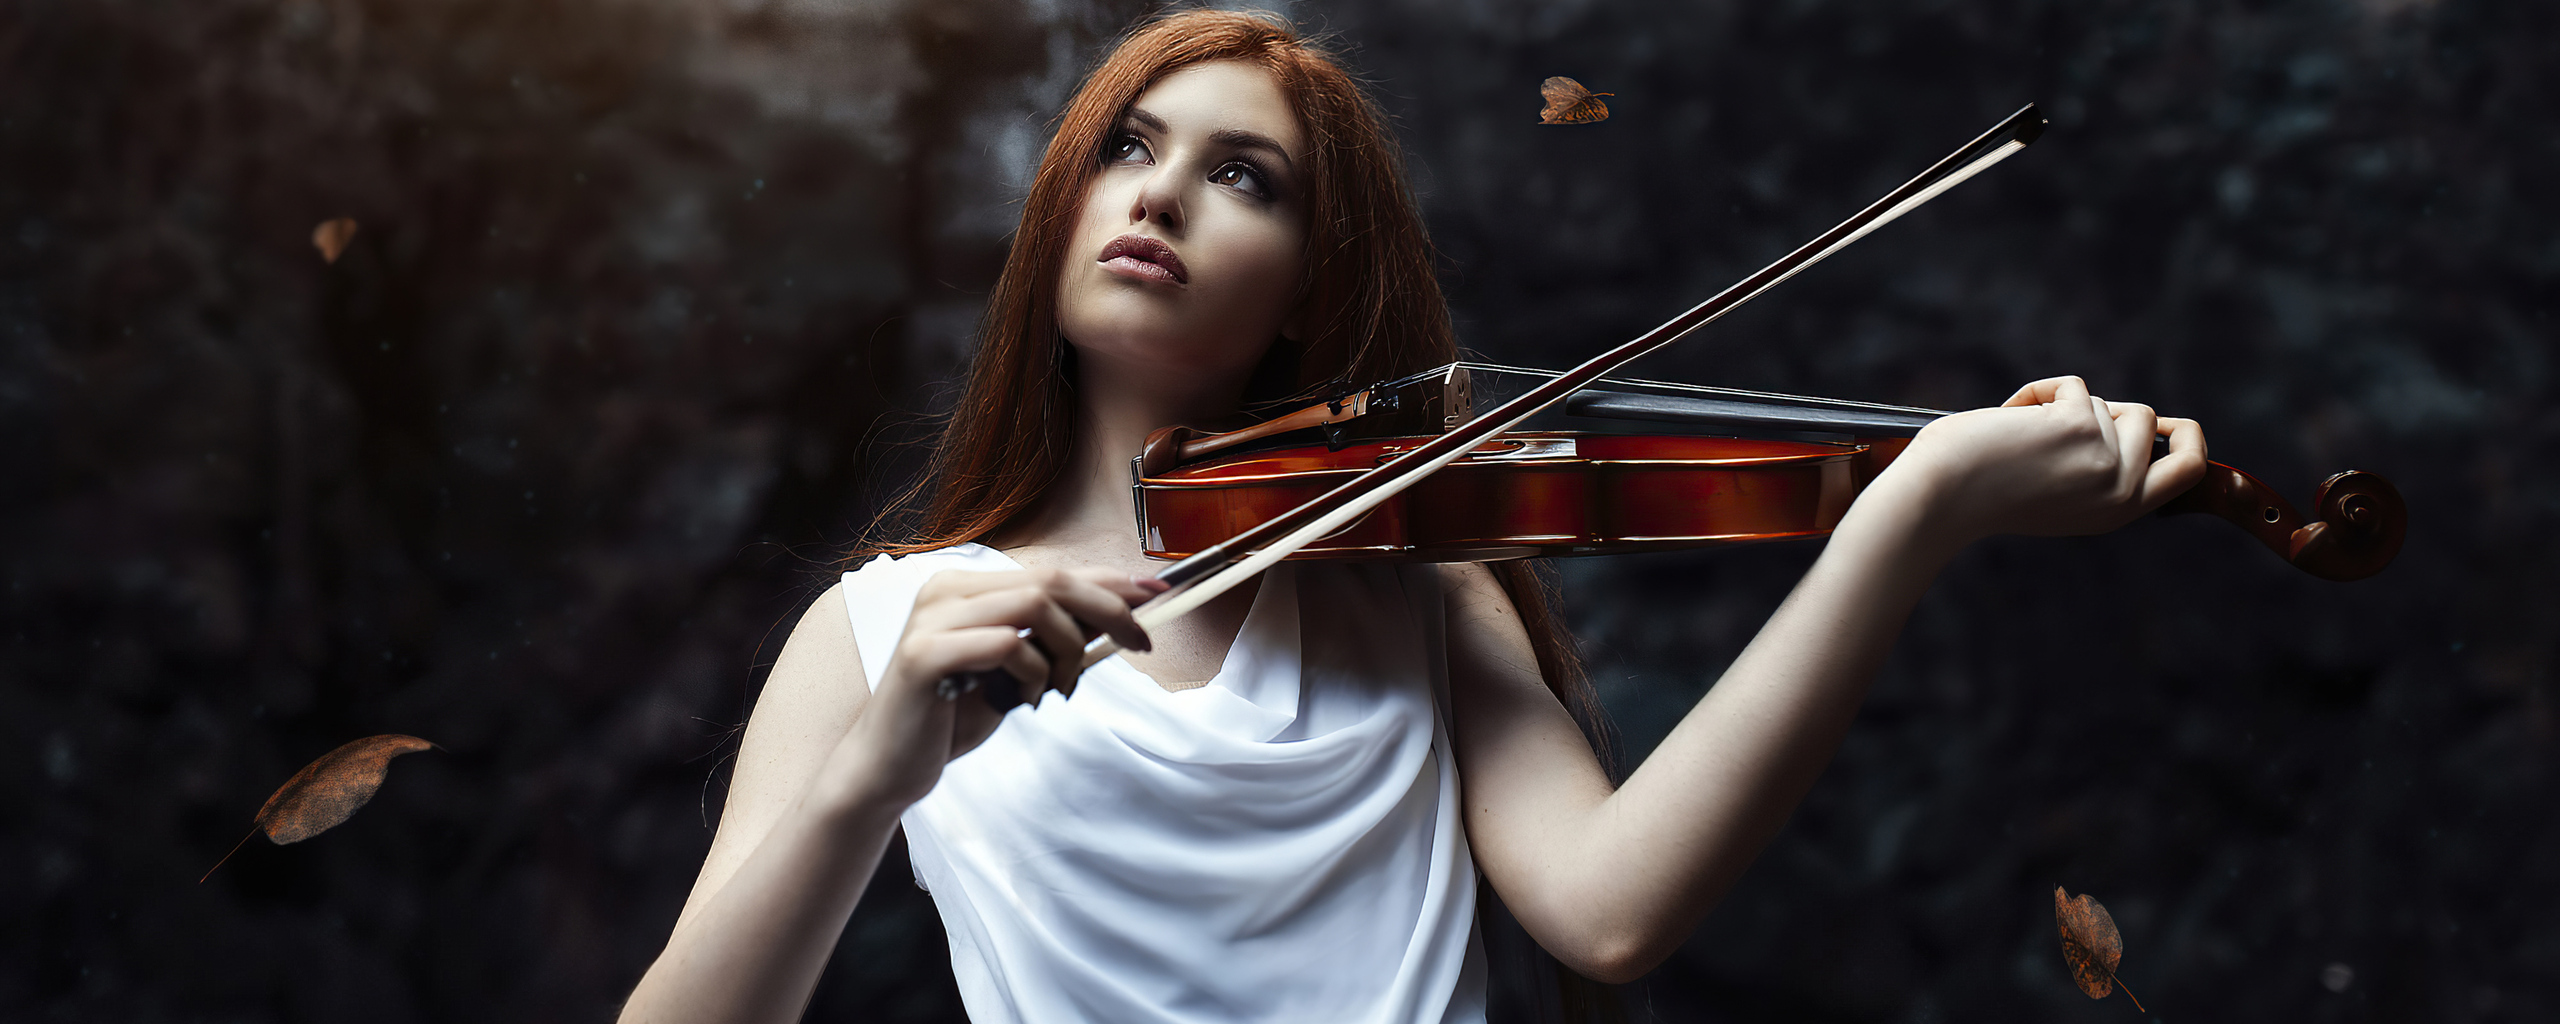 Талантливая девушка выступает фон. Девушка рыжая играет на скрипке черный фон.